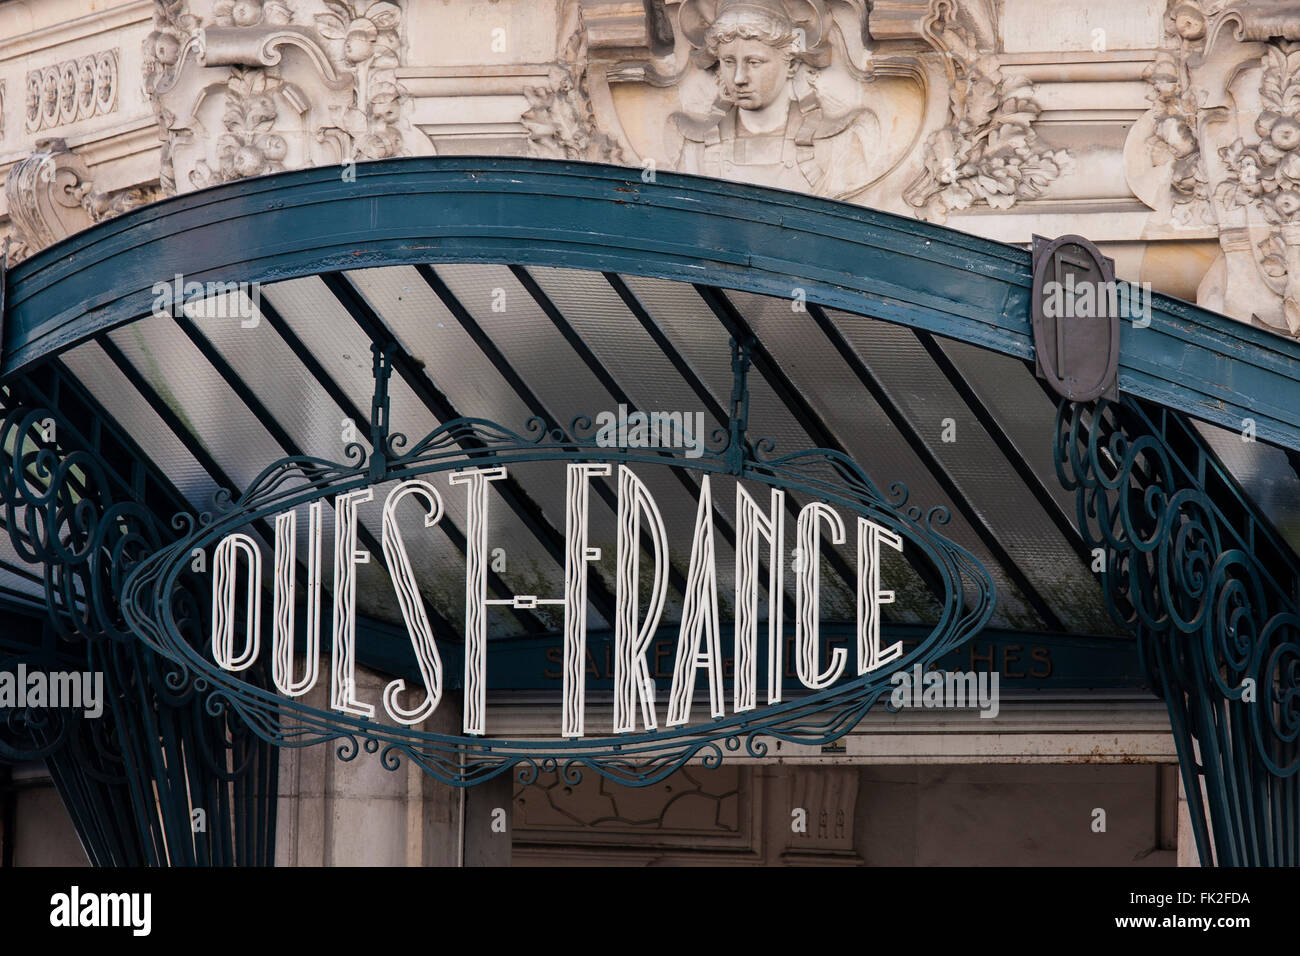 Gare Art nouveau signe, Rennes, France Banque D'Images